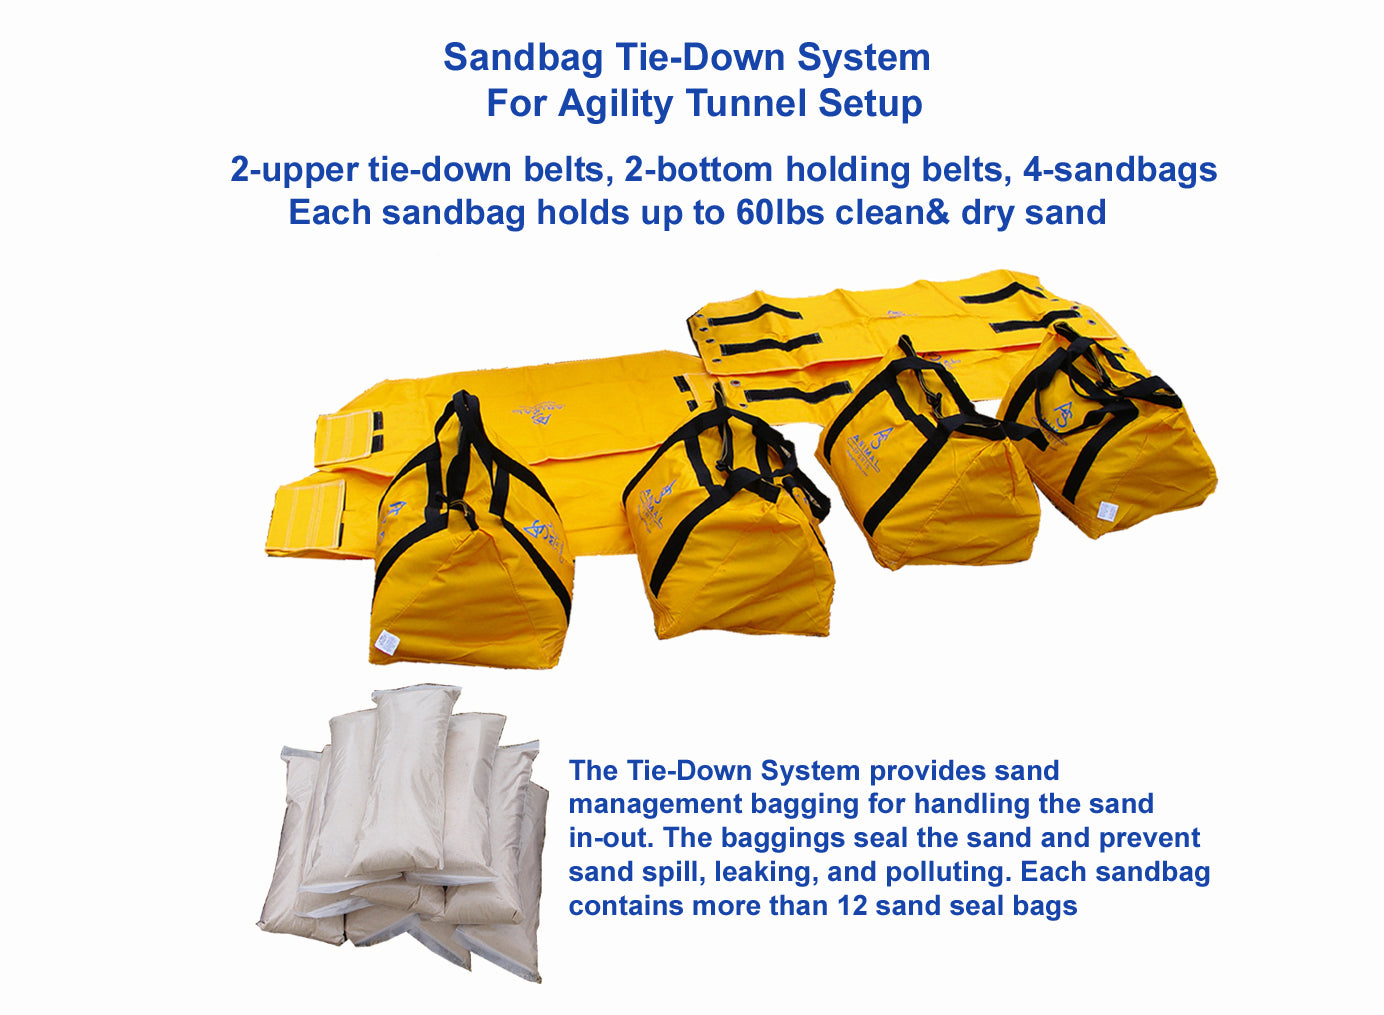 *16” Sandbag Tiedown System for Agility Tunnel Setup - Dog Agility USA